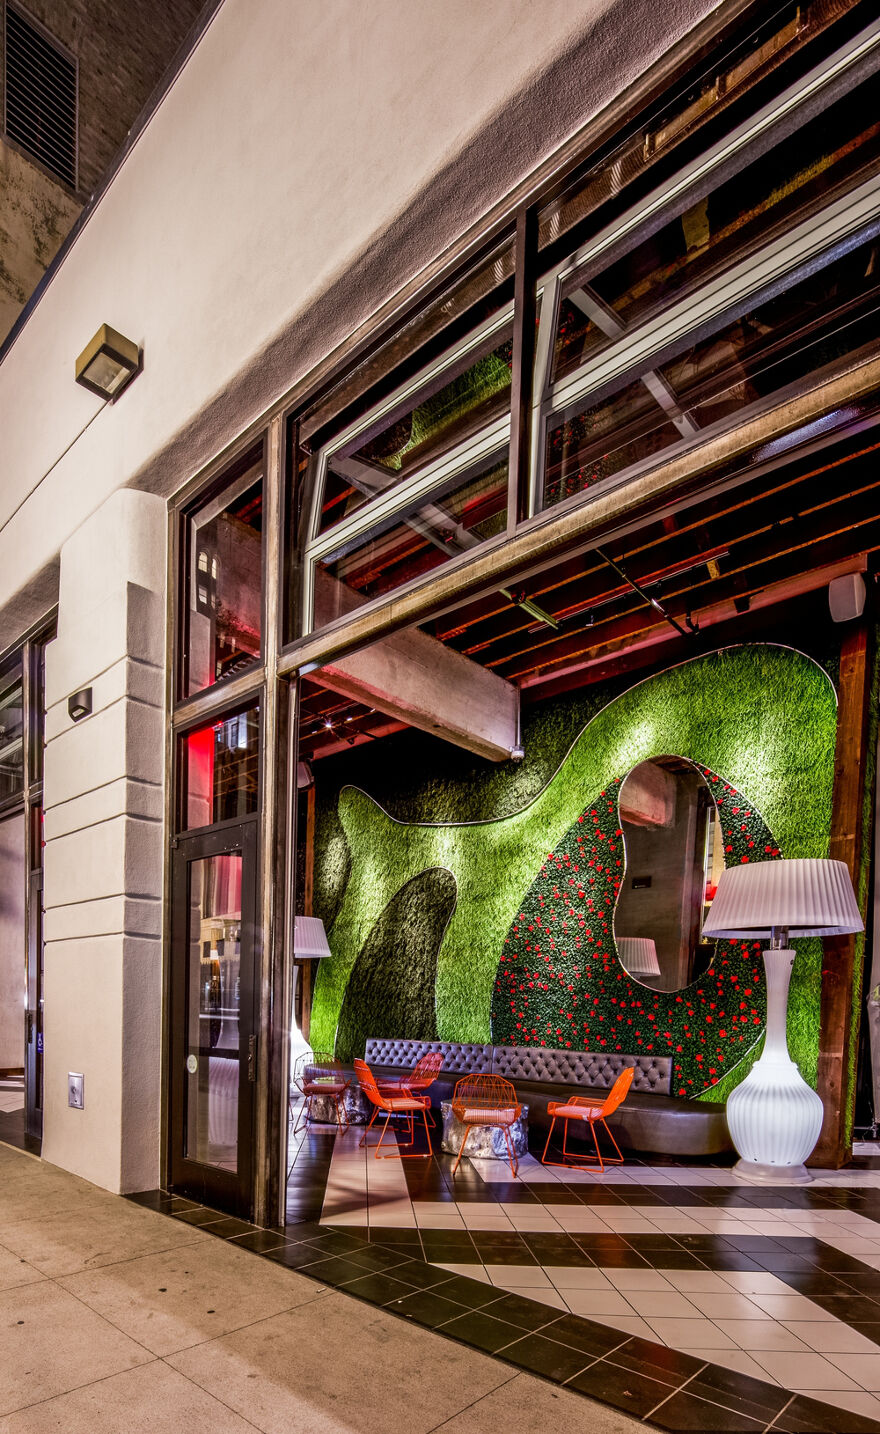 圣地亚哥Parq餐厅设计与酒吧设计巧妙结合